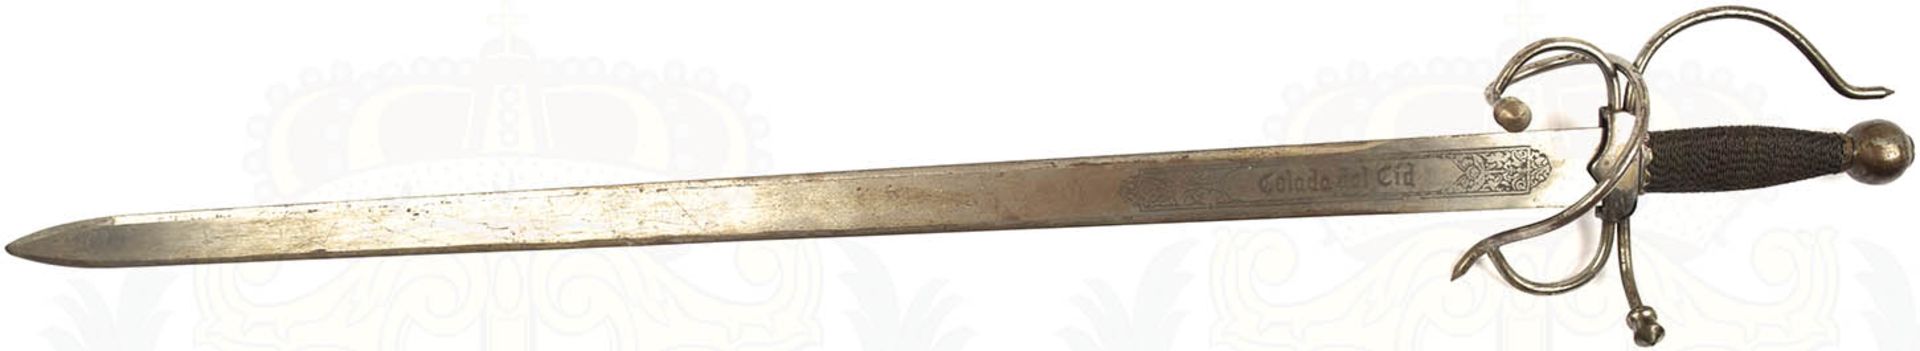 DEKOSCHWERT "COLADA DEL CID", im Stil des 16. Jhd., zweischneidige Klinge mit beids. Zierätzung,